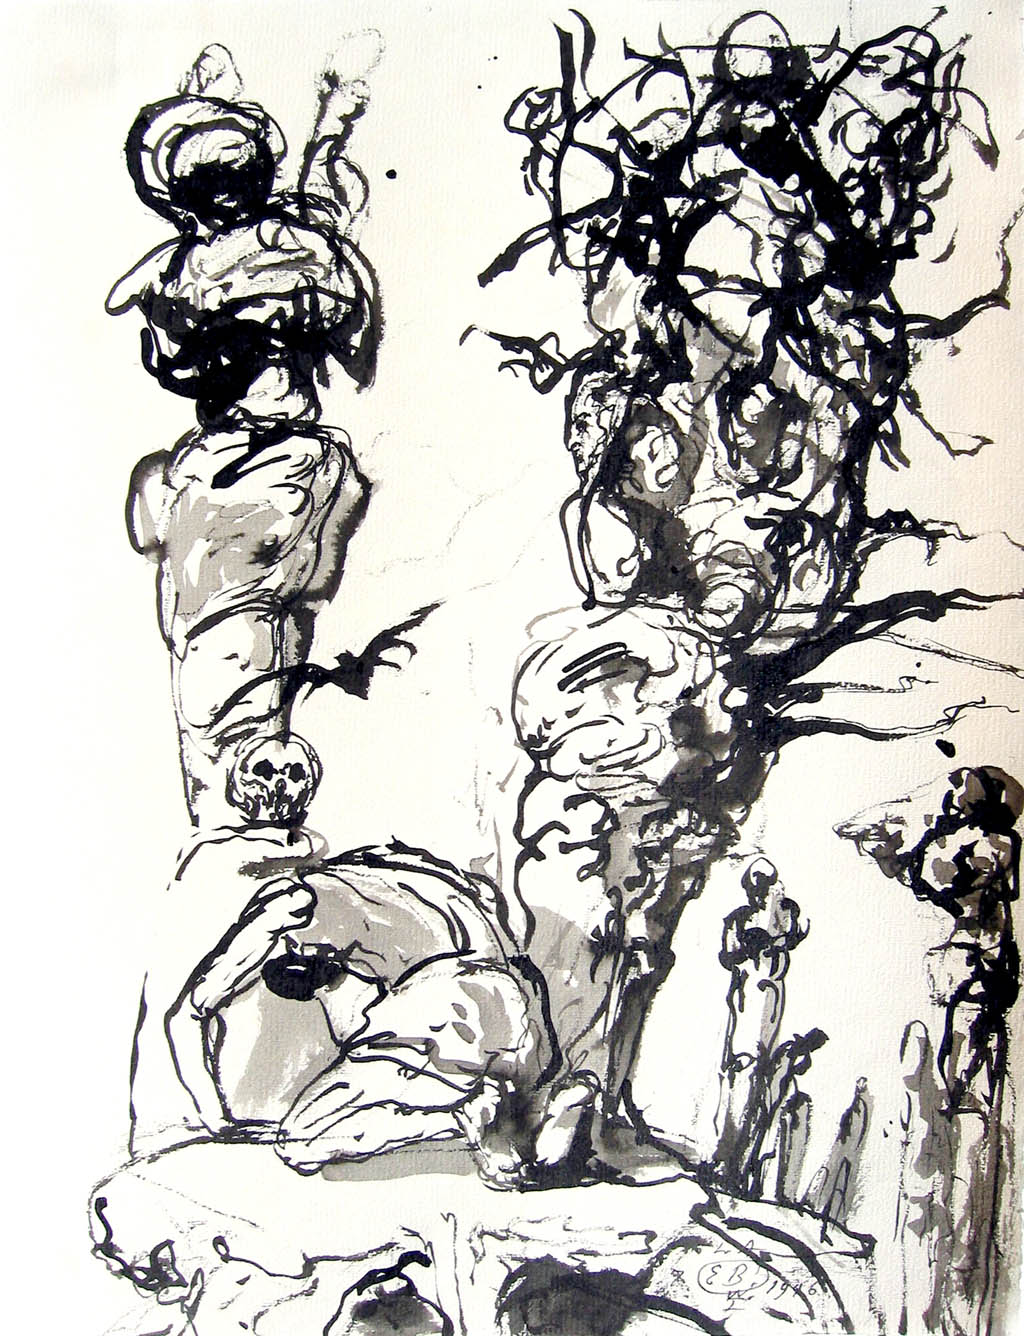 Eugene Berman - La tentation de St. Antoine (The Temptation of St. Anthony) - 1946 ink on paper